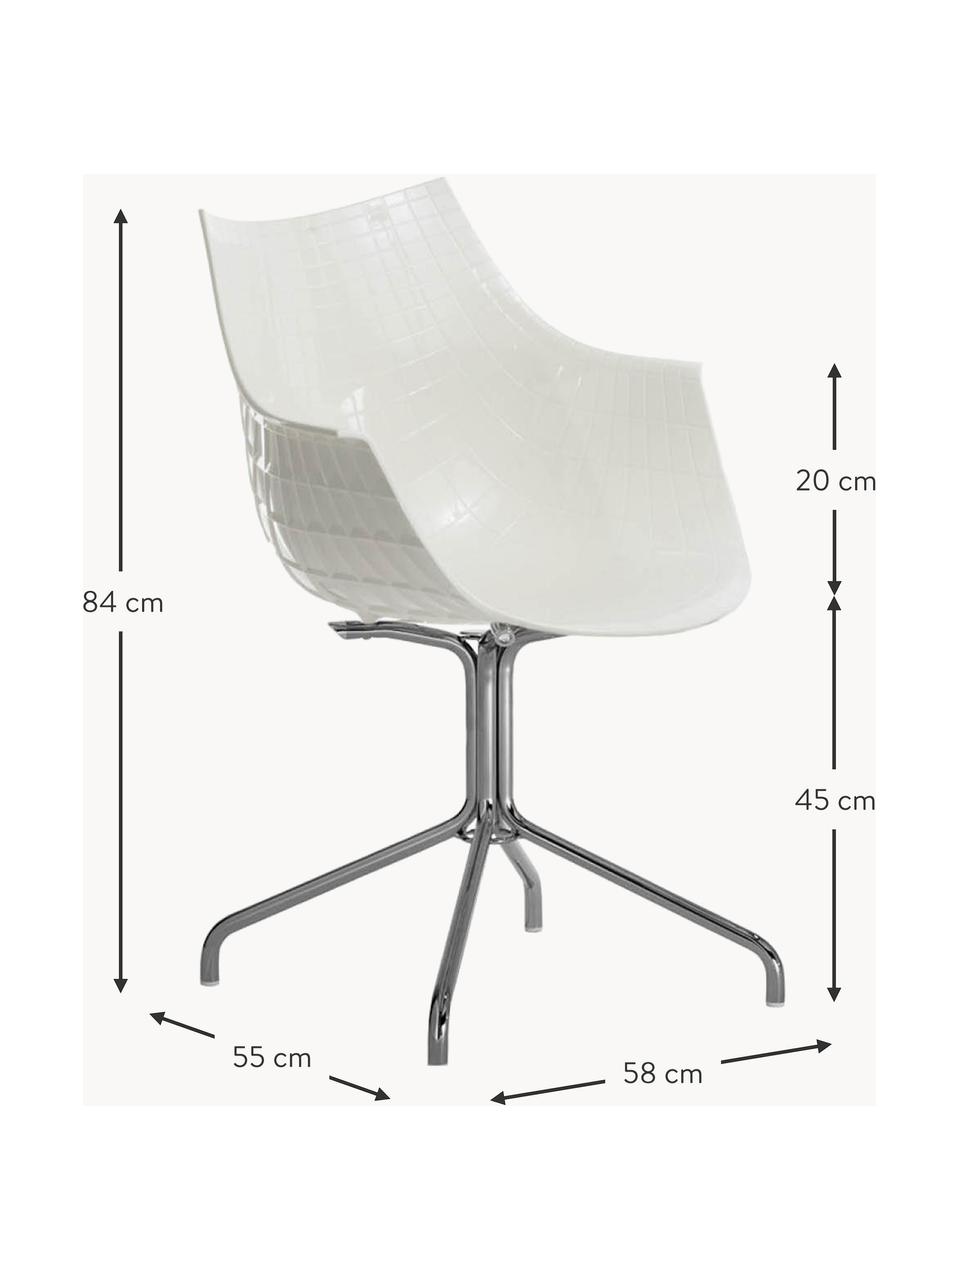 Drehbarer Kunststoffstuhl Meridiana, Sitzfläche: Kunststoff, Beine: Stahl, verchromt, Off White, Silberfarben, B 58 x T 55 cm